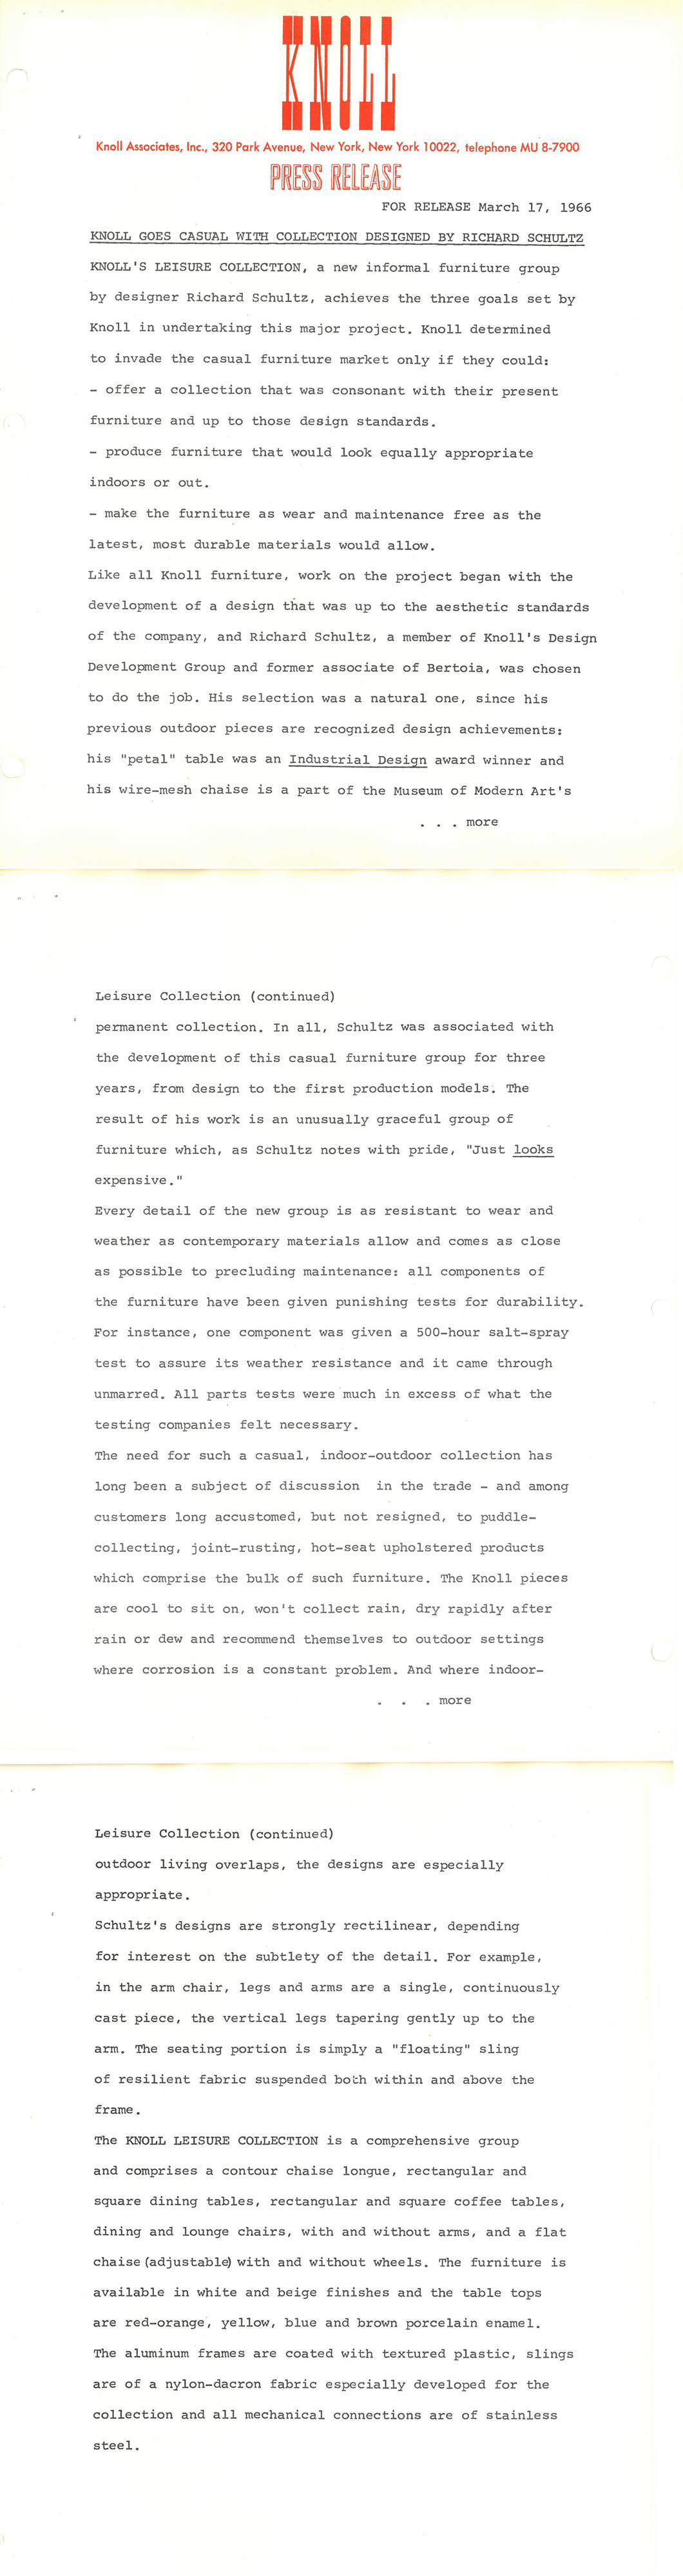 Schultz Archival Press Release